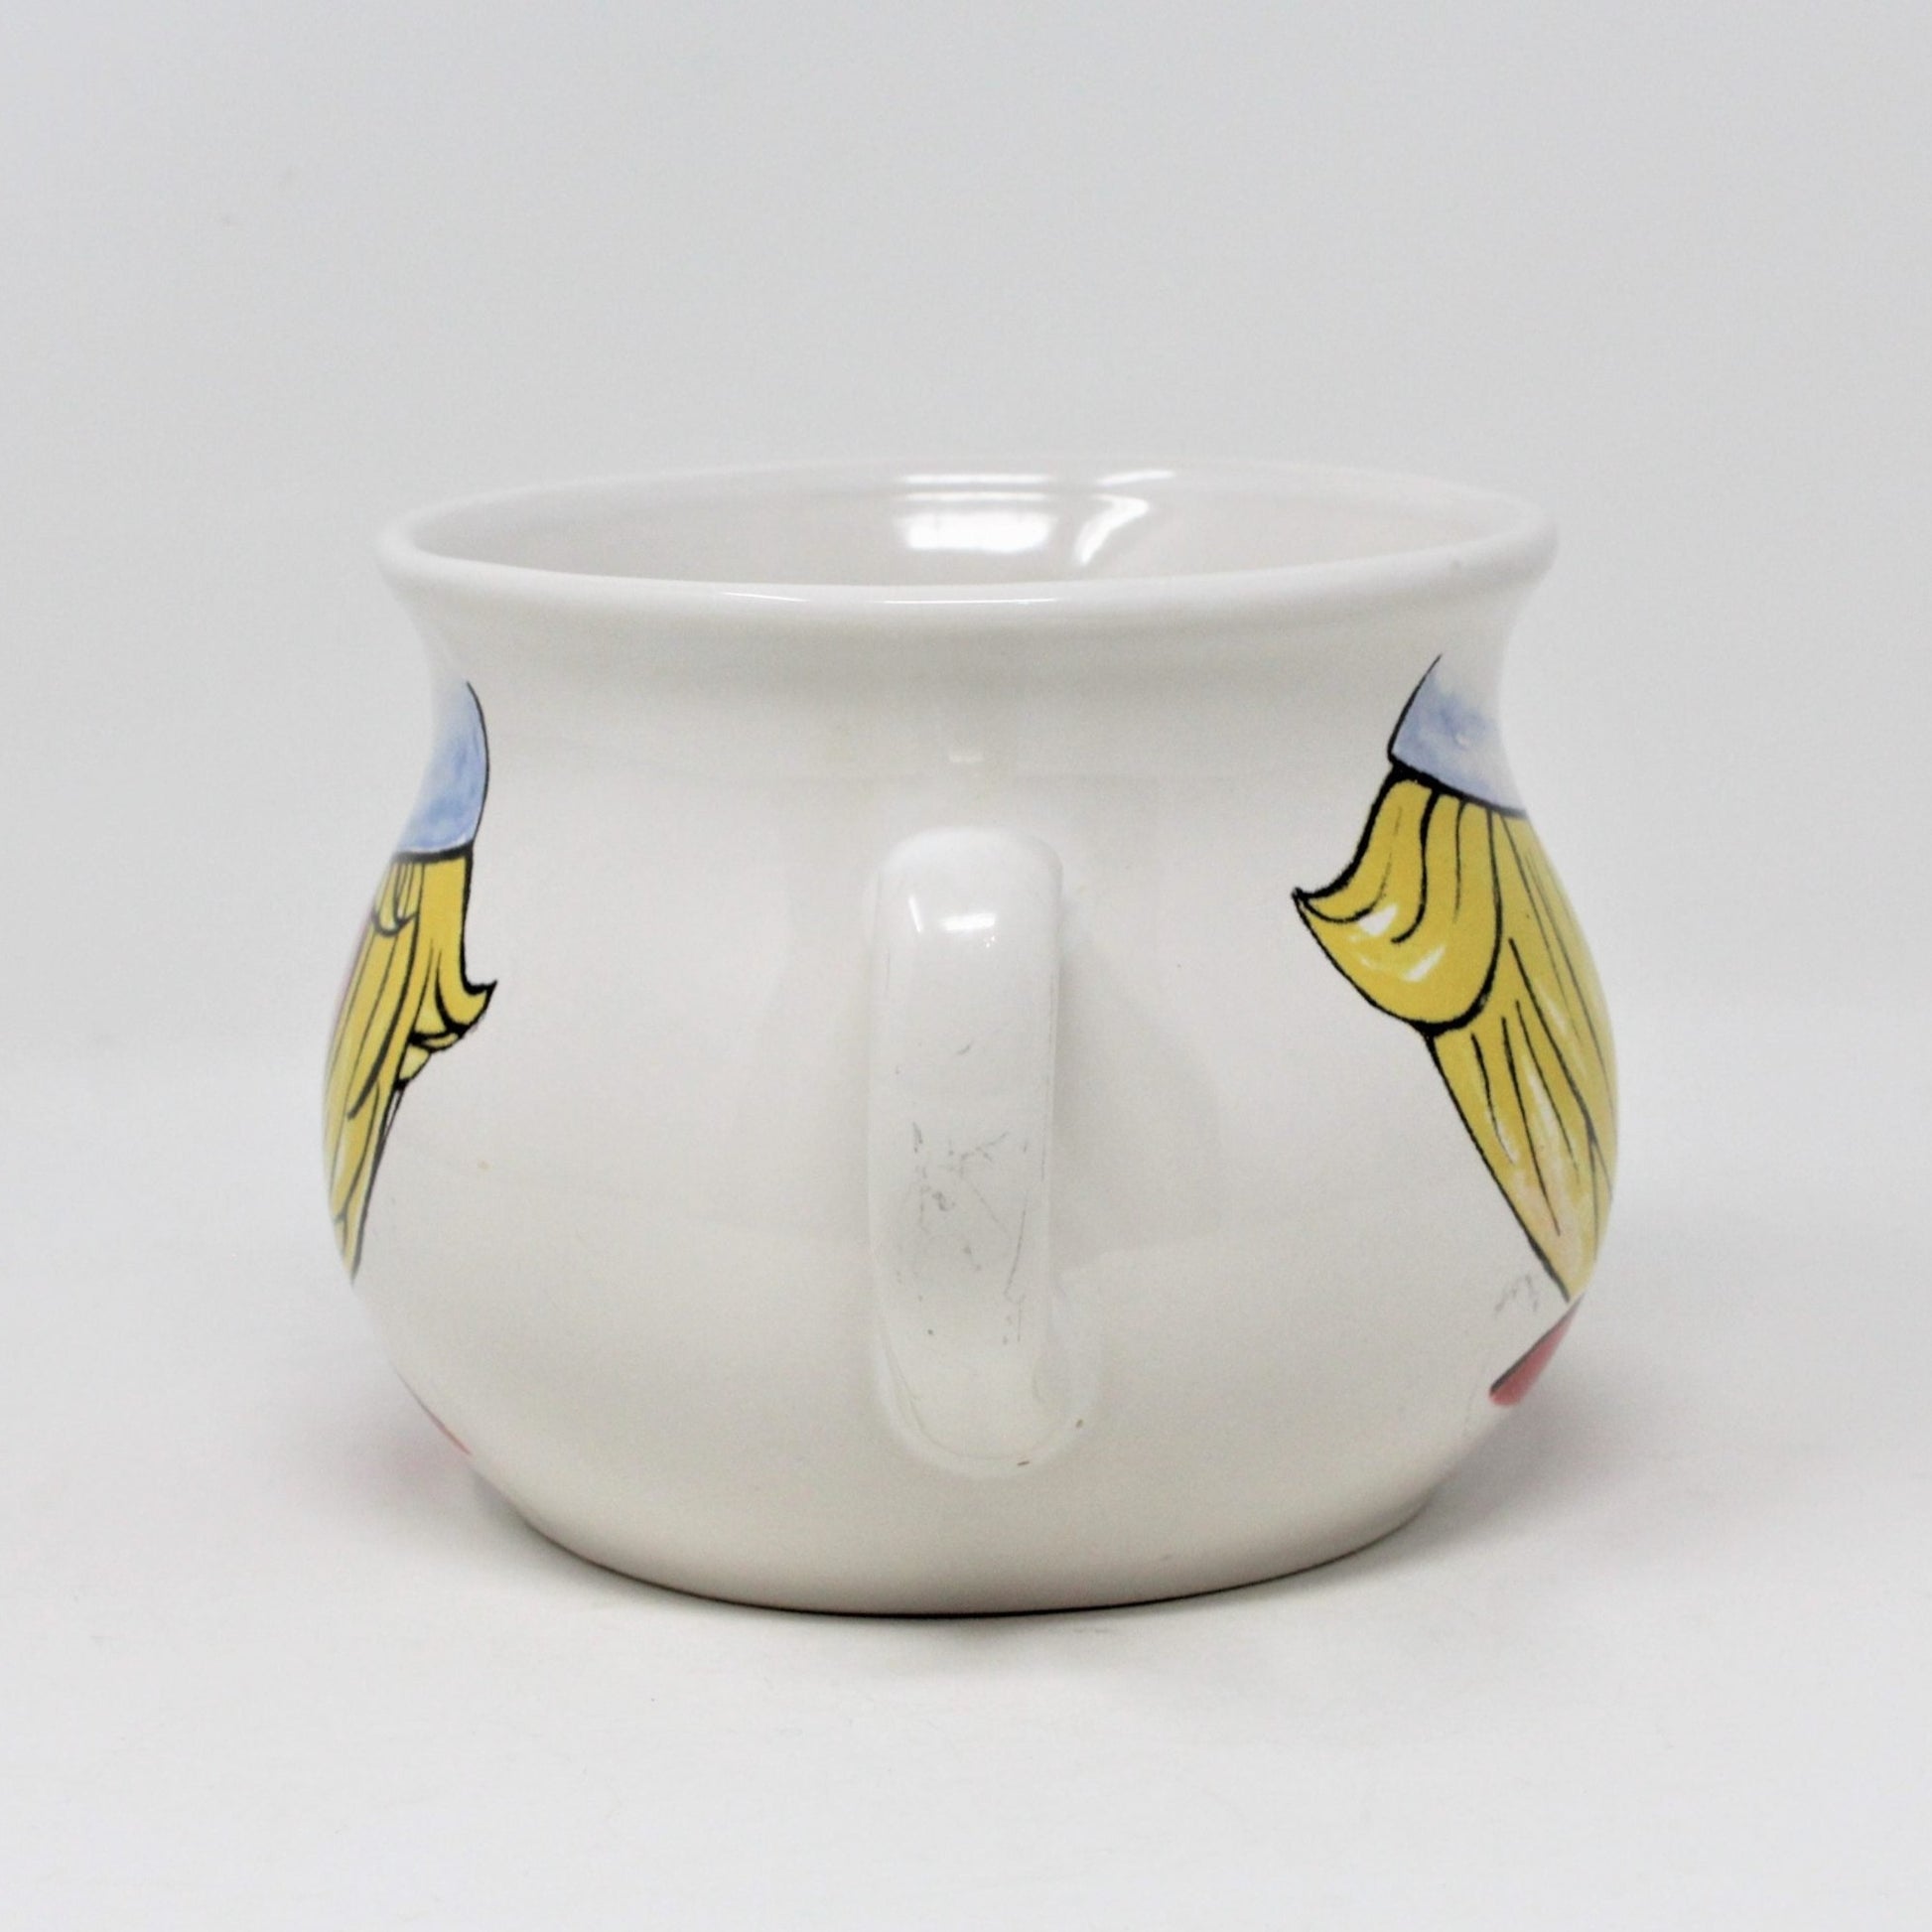 Soup Mug, Campbell's Kids, HH Houston Harvest, Ceramic, 1998 – Antigo Trunk